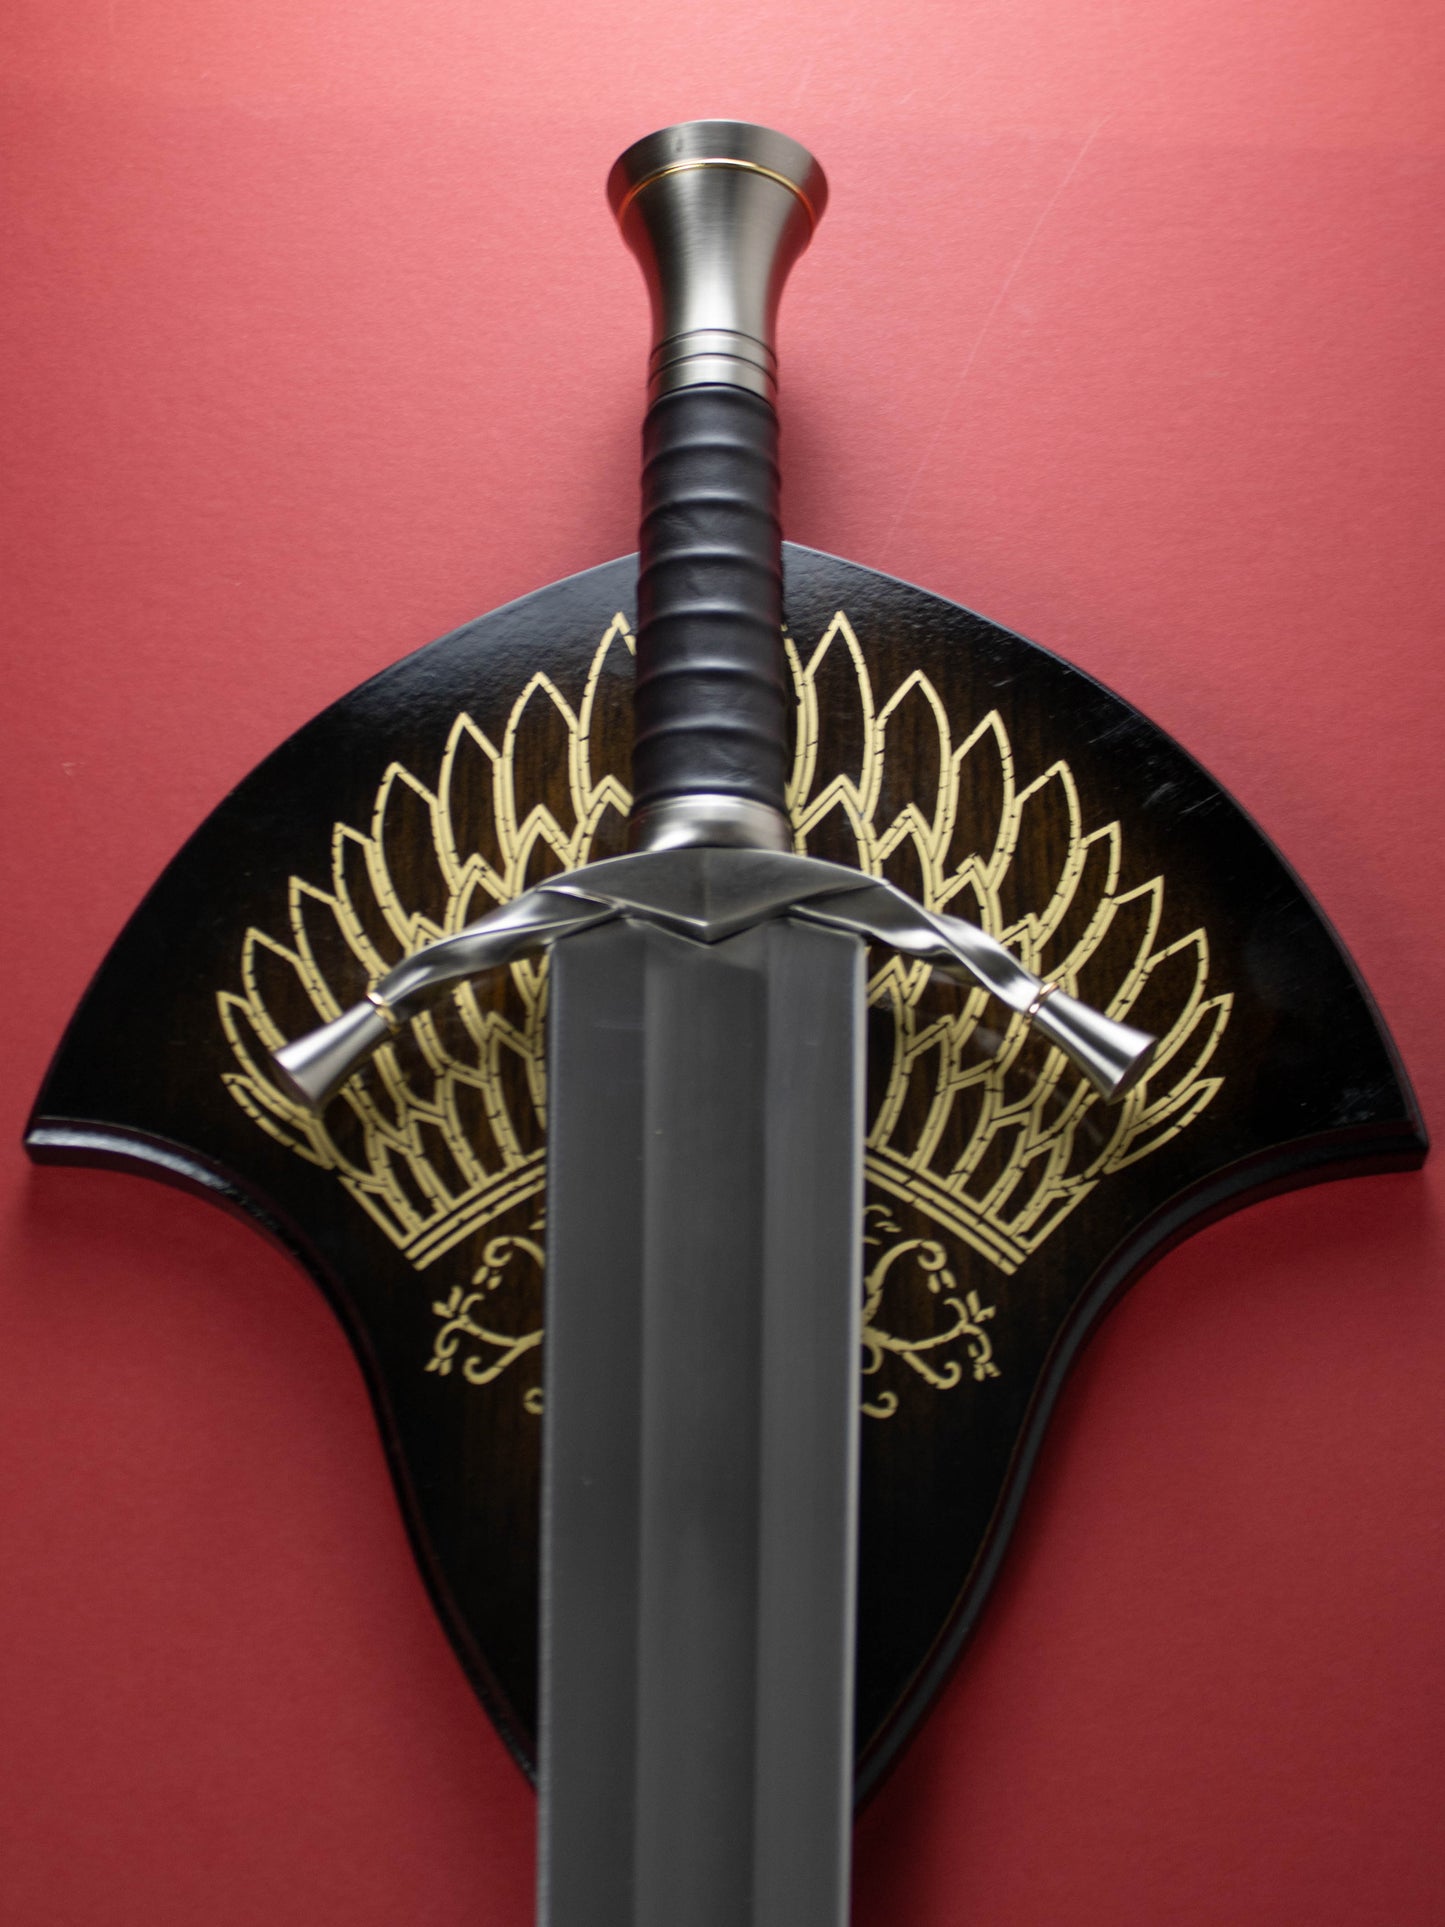 Boromir Lord of the Rings Sword Metal Replica